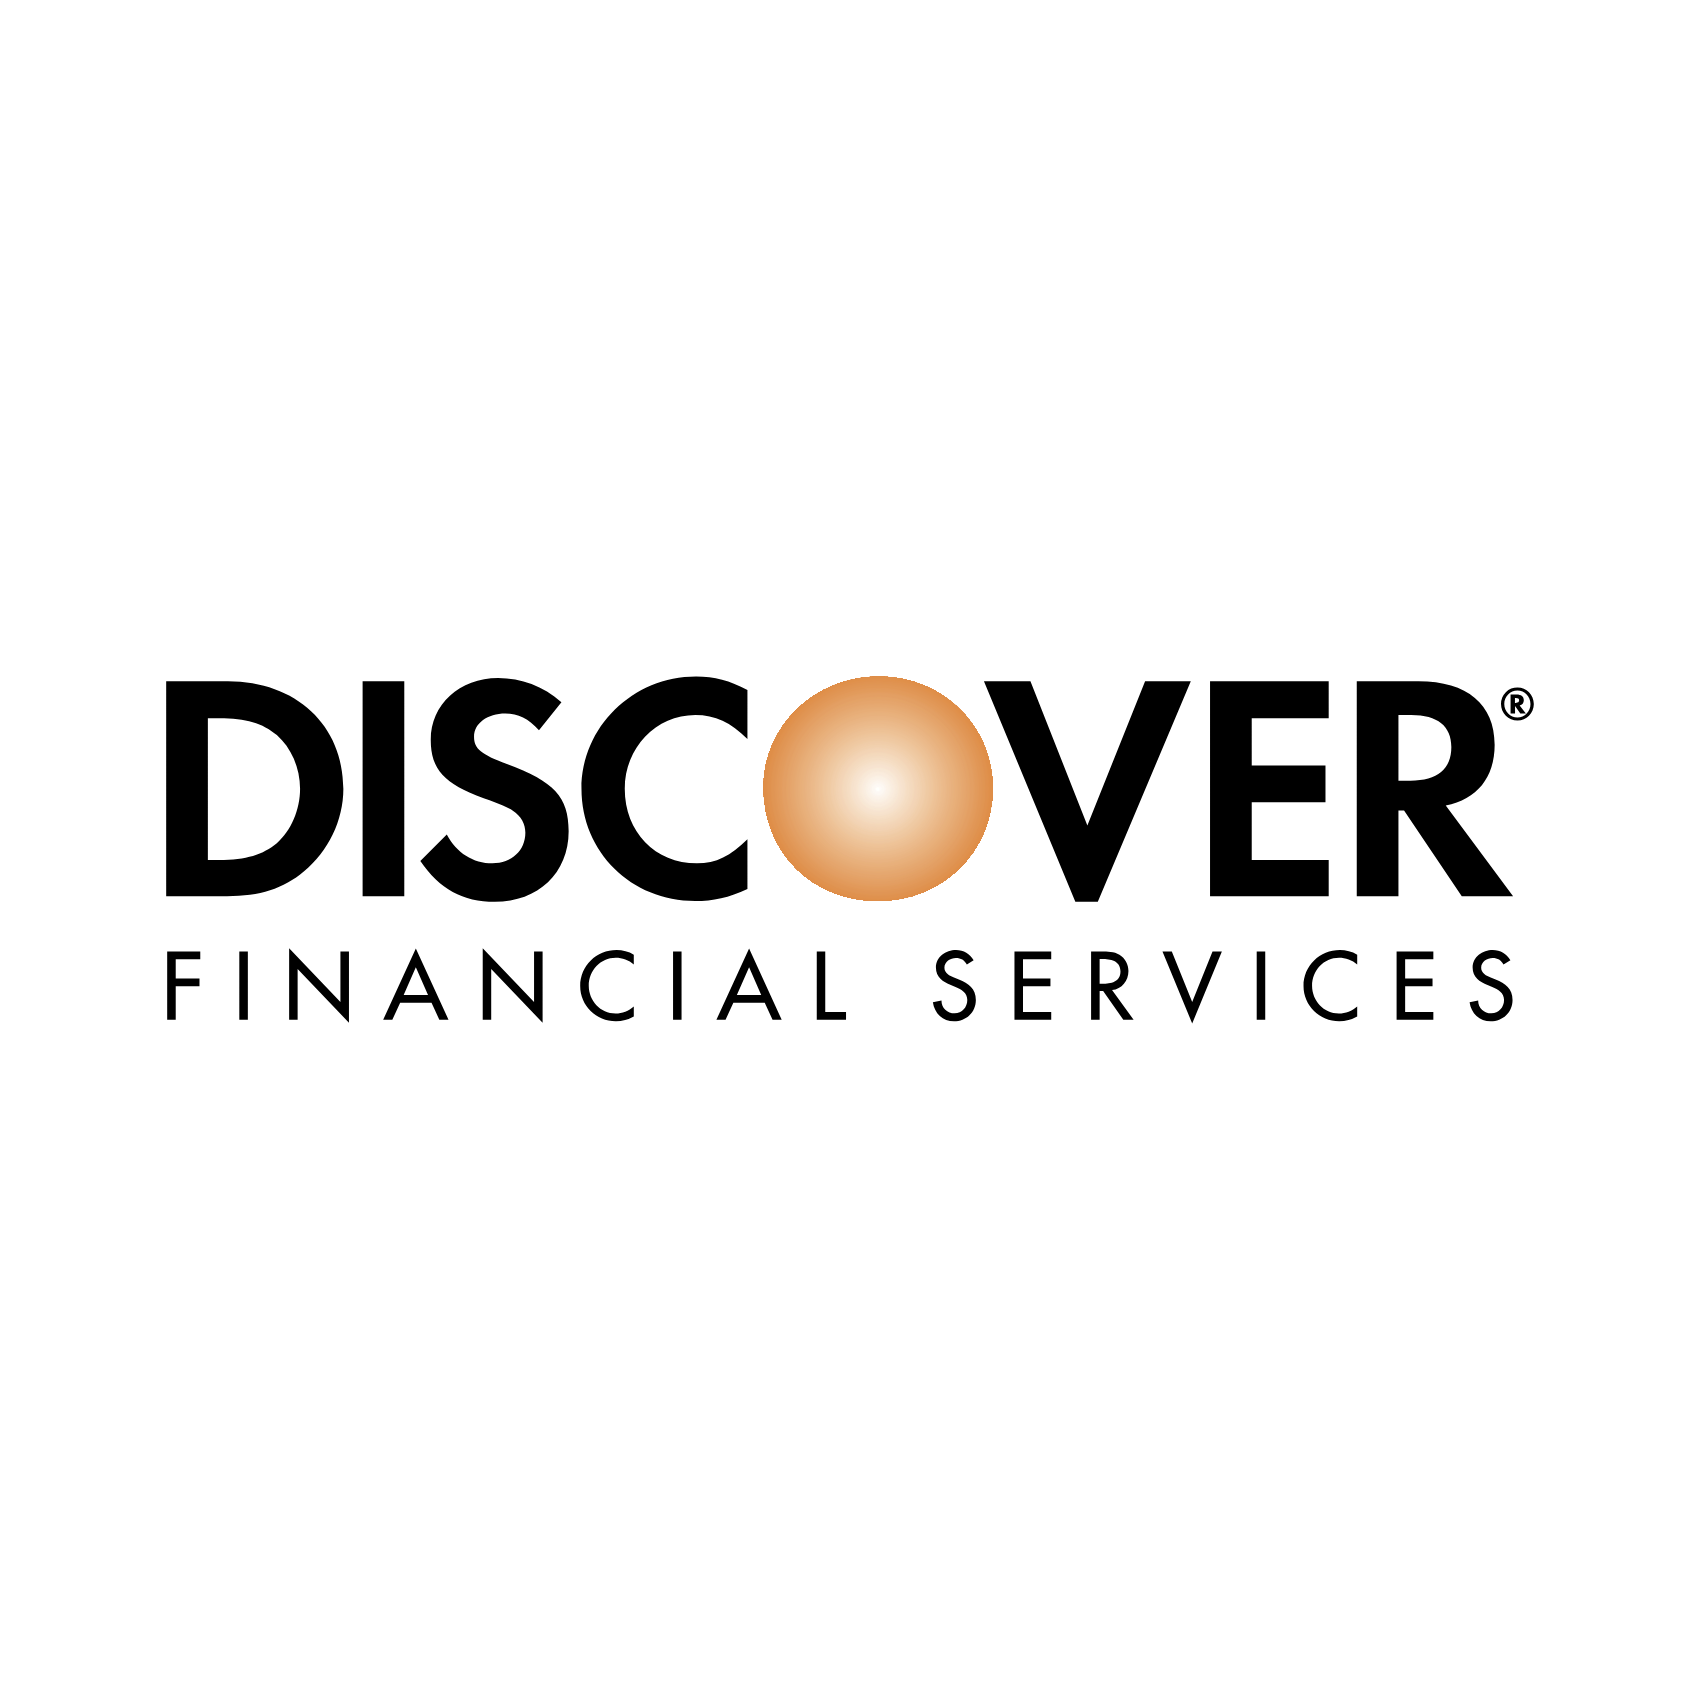 discover financial service logo